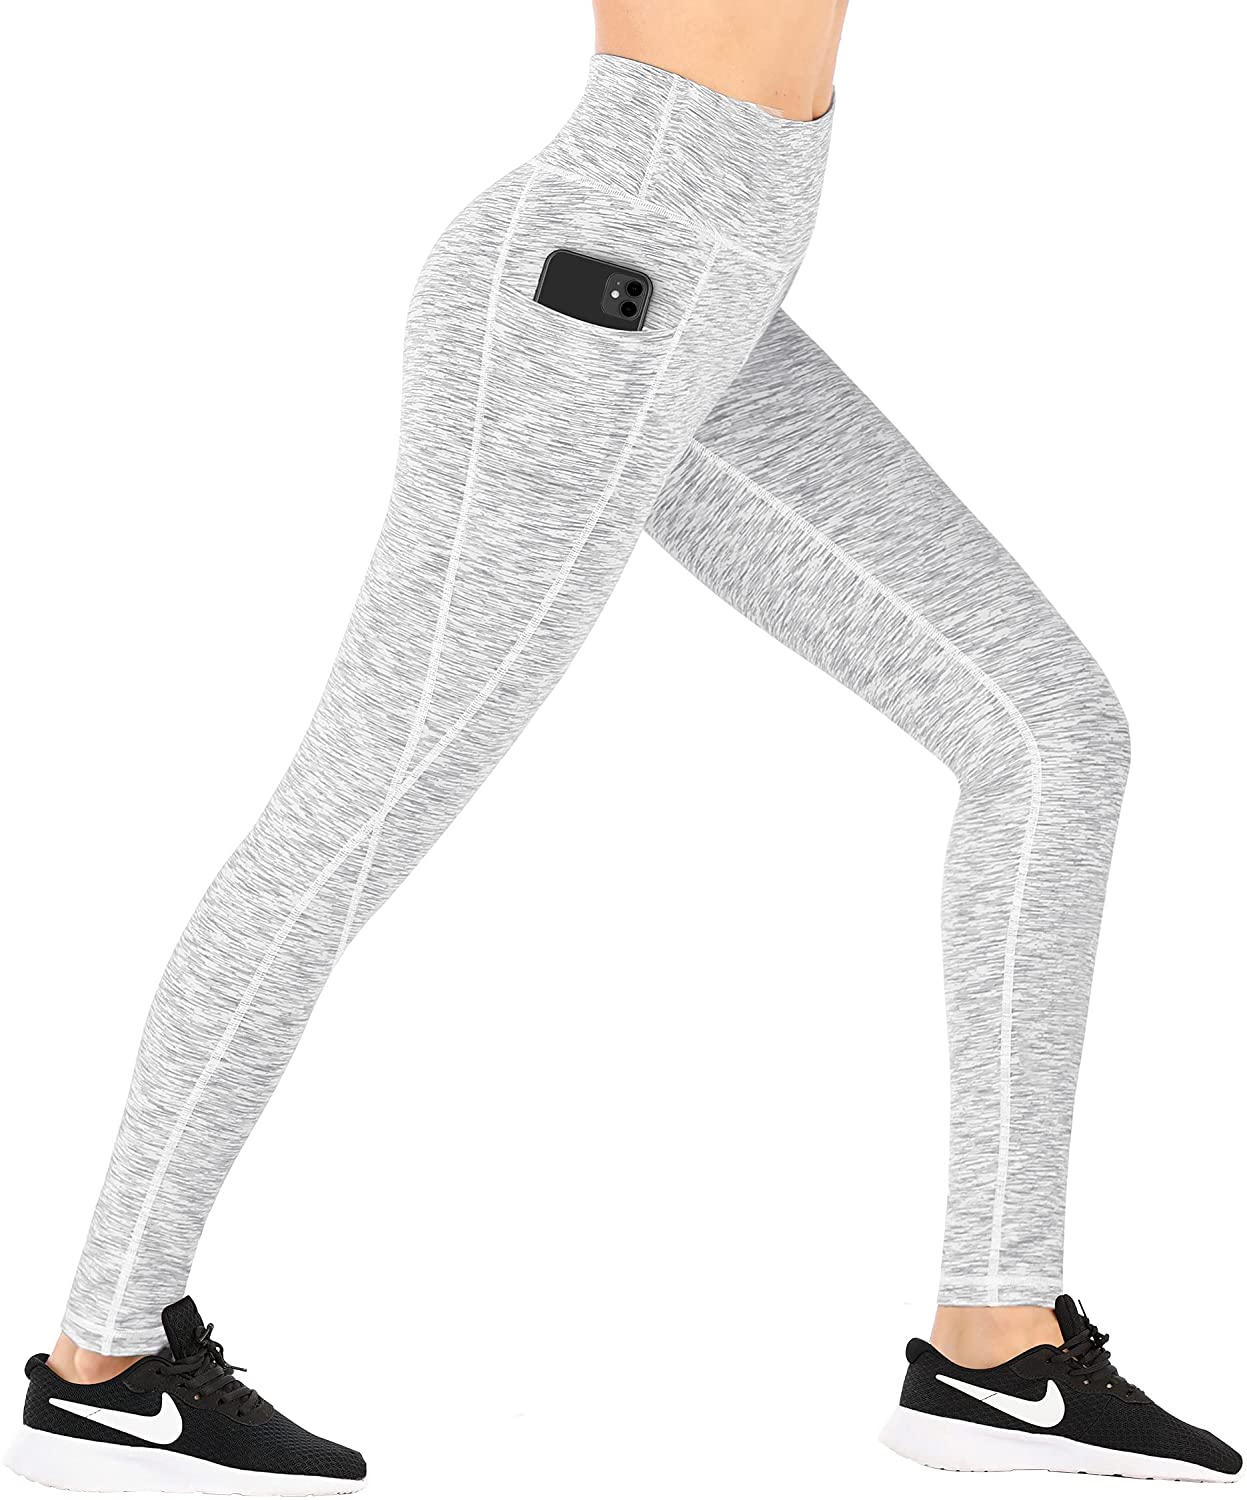 Ewedoos Fleece Lined Thermal Yoga Pants with Pockets - Winter Leggings